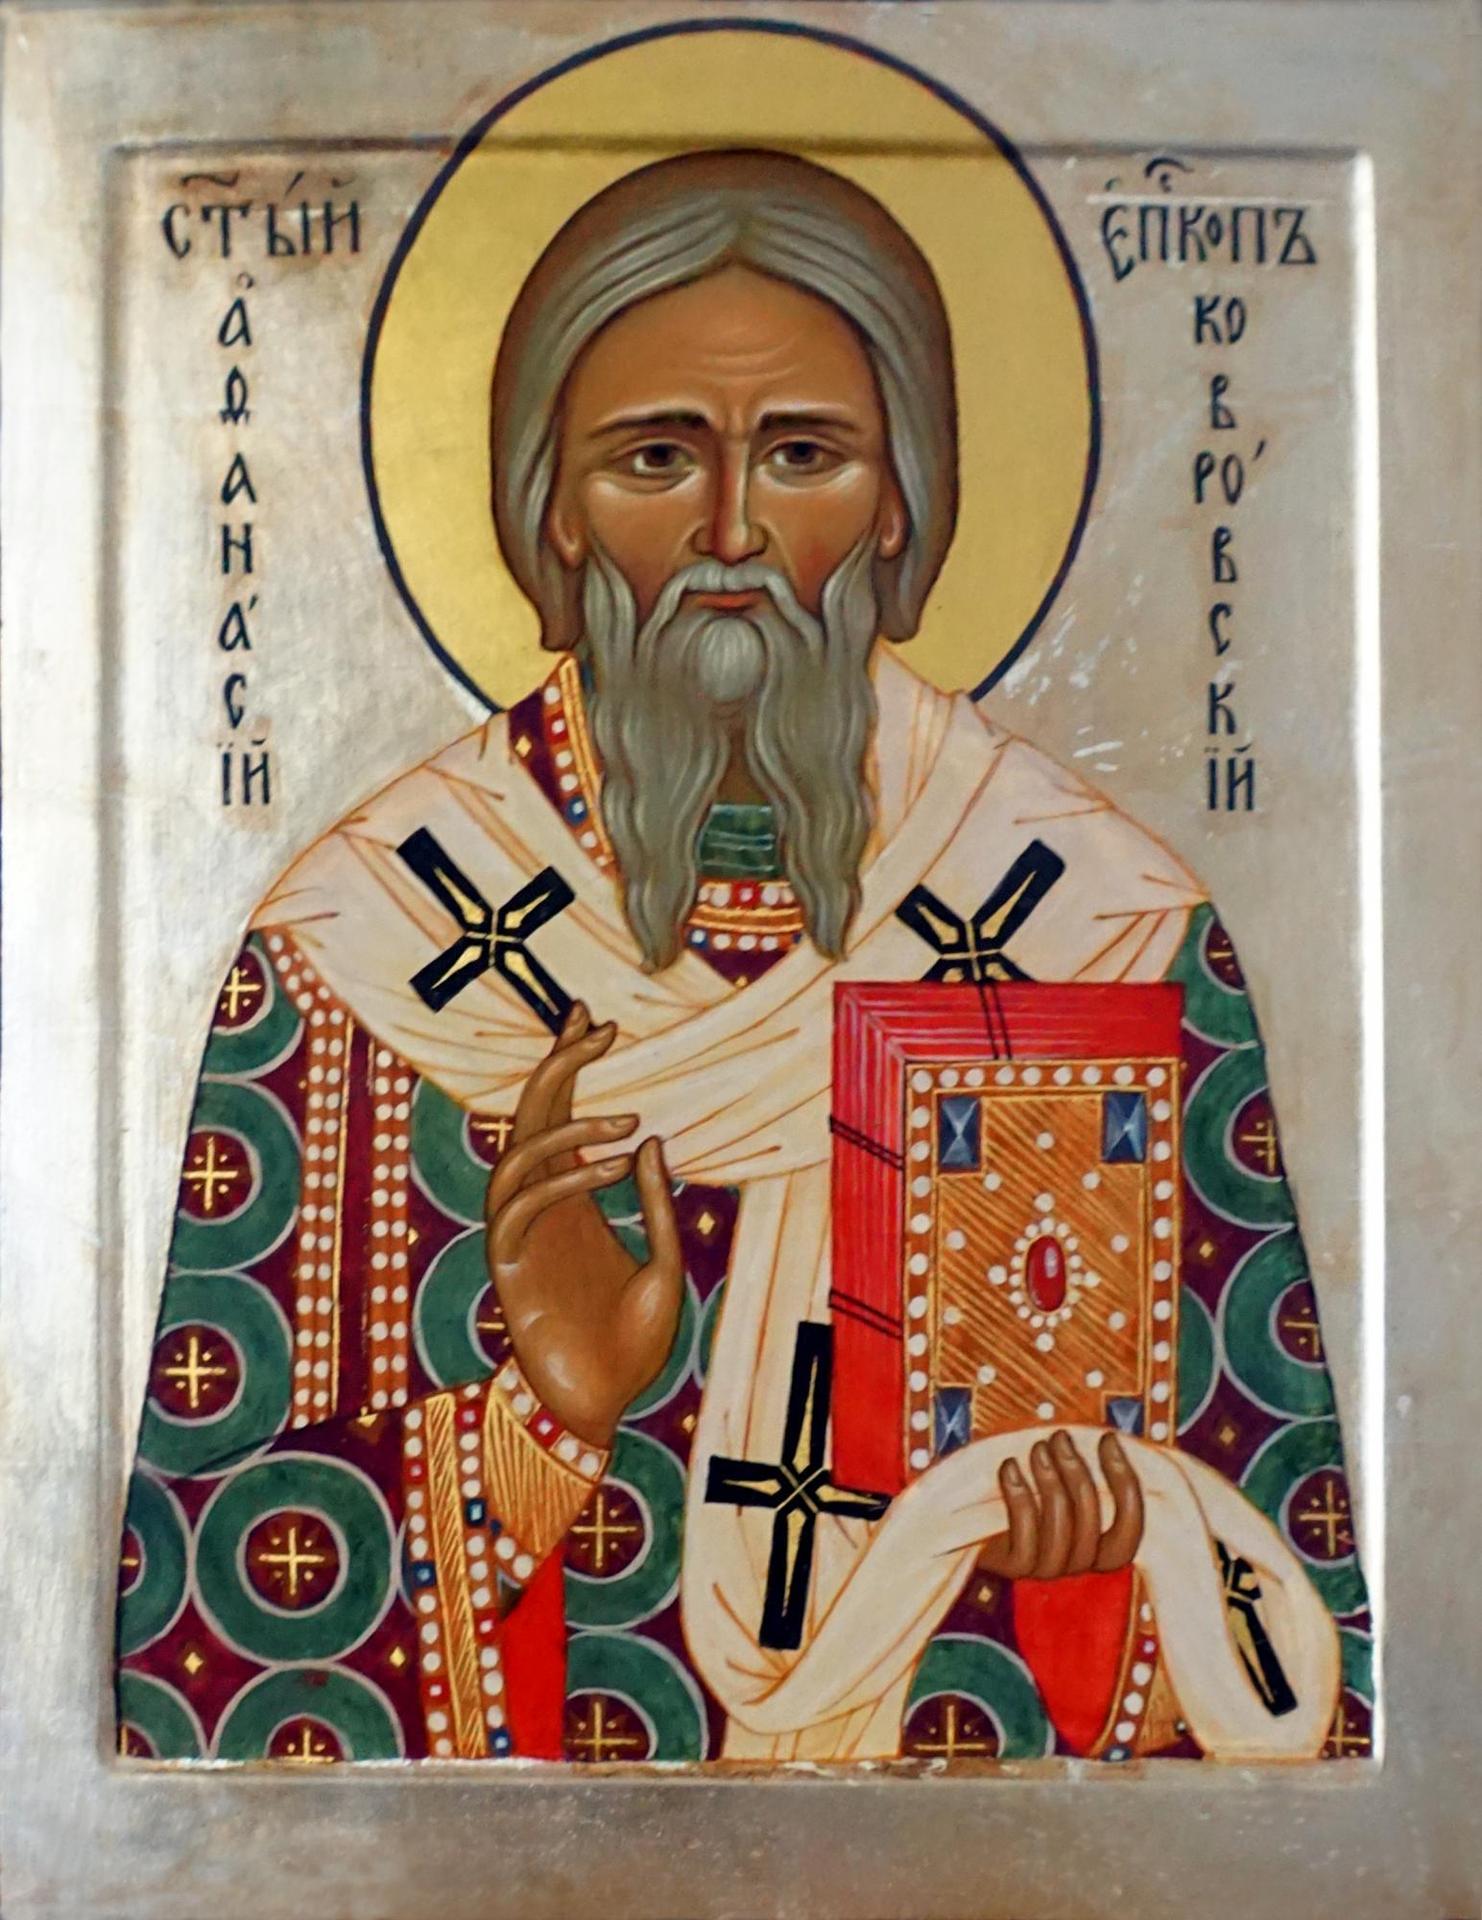 Икона Святителя Афанасия, епископа Ковровского